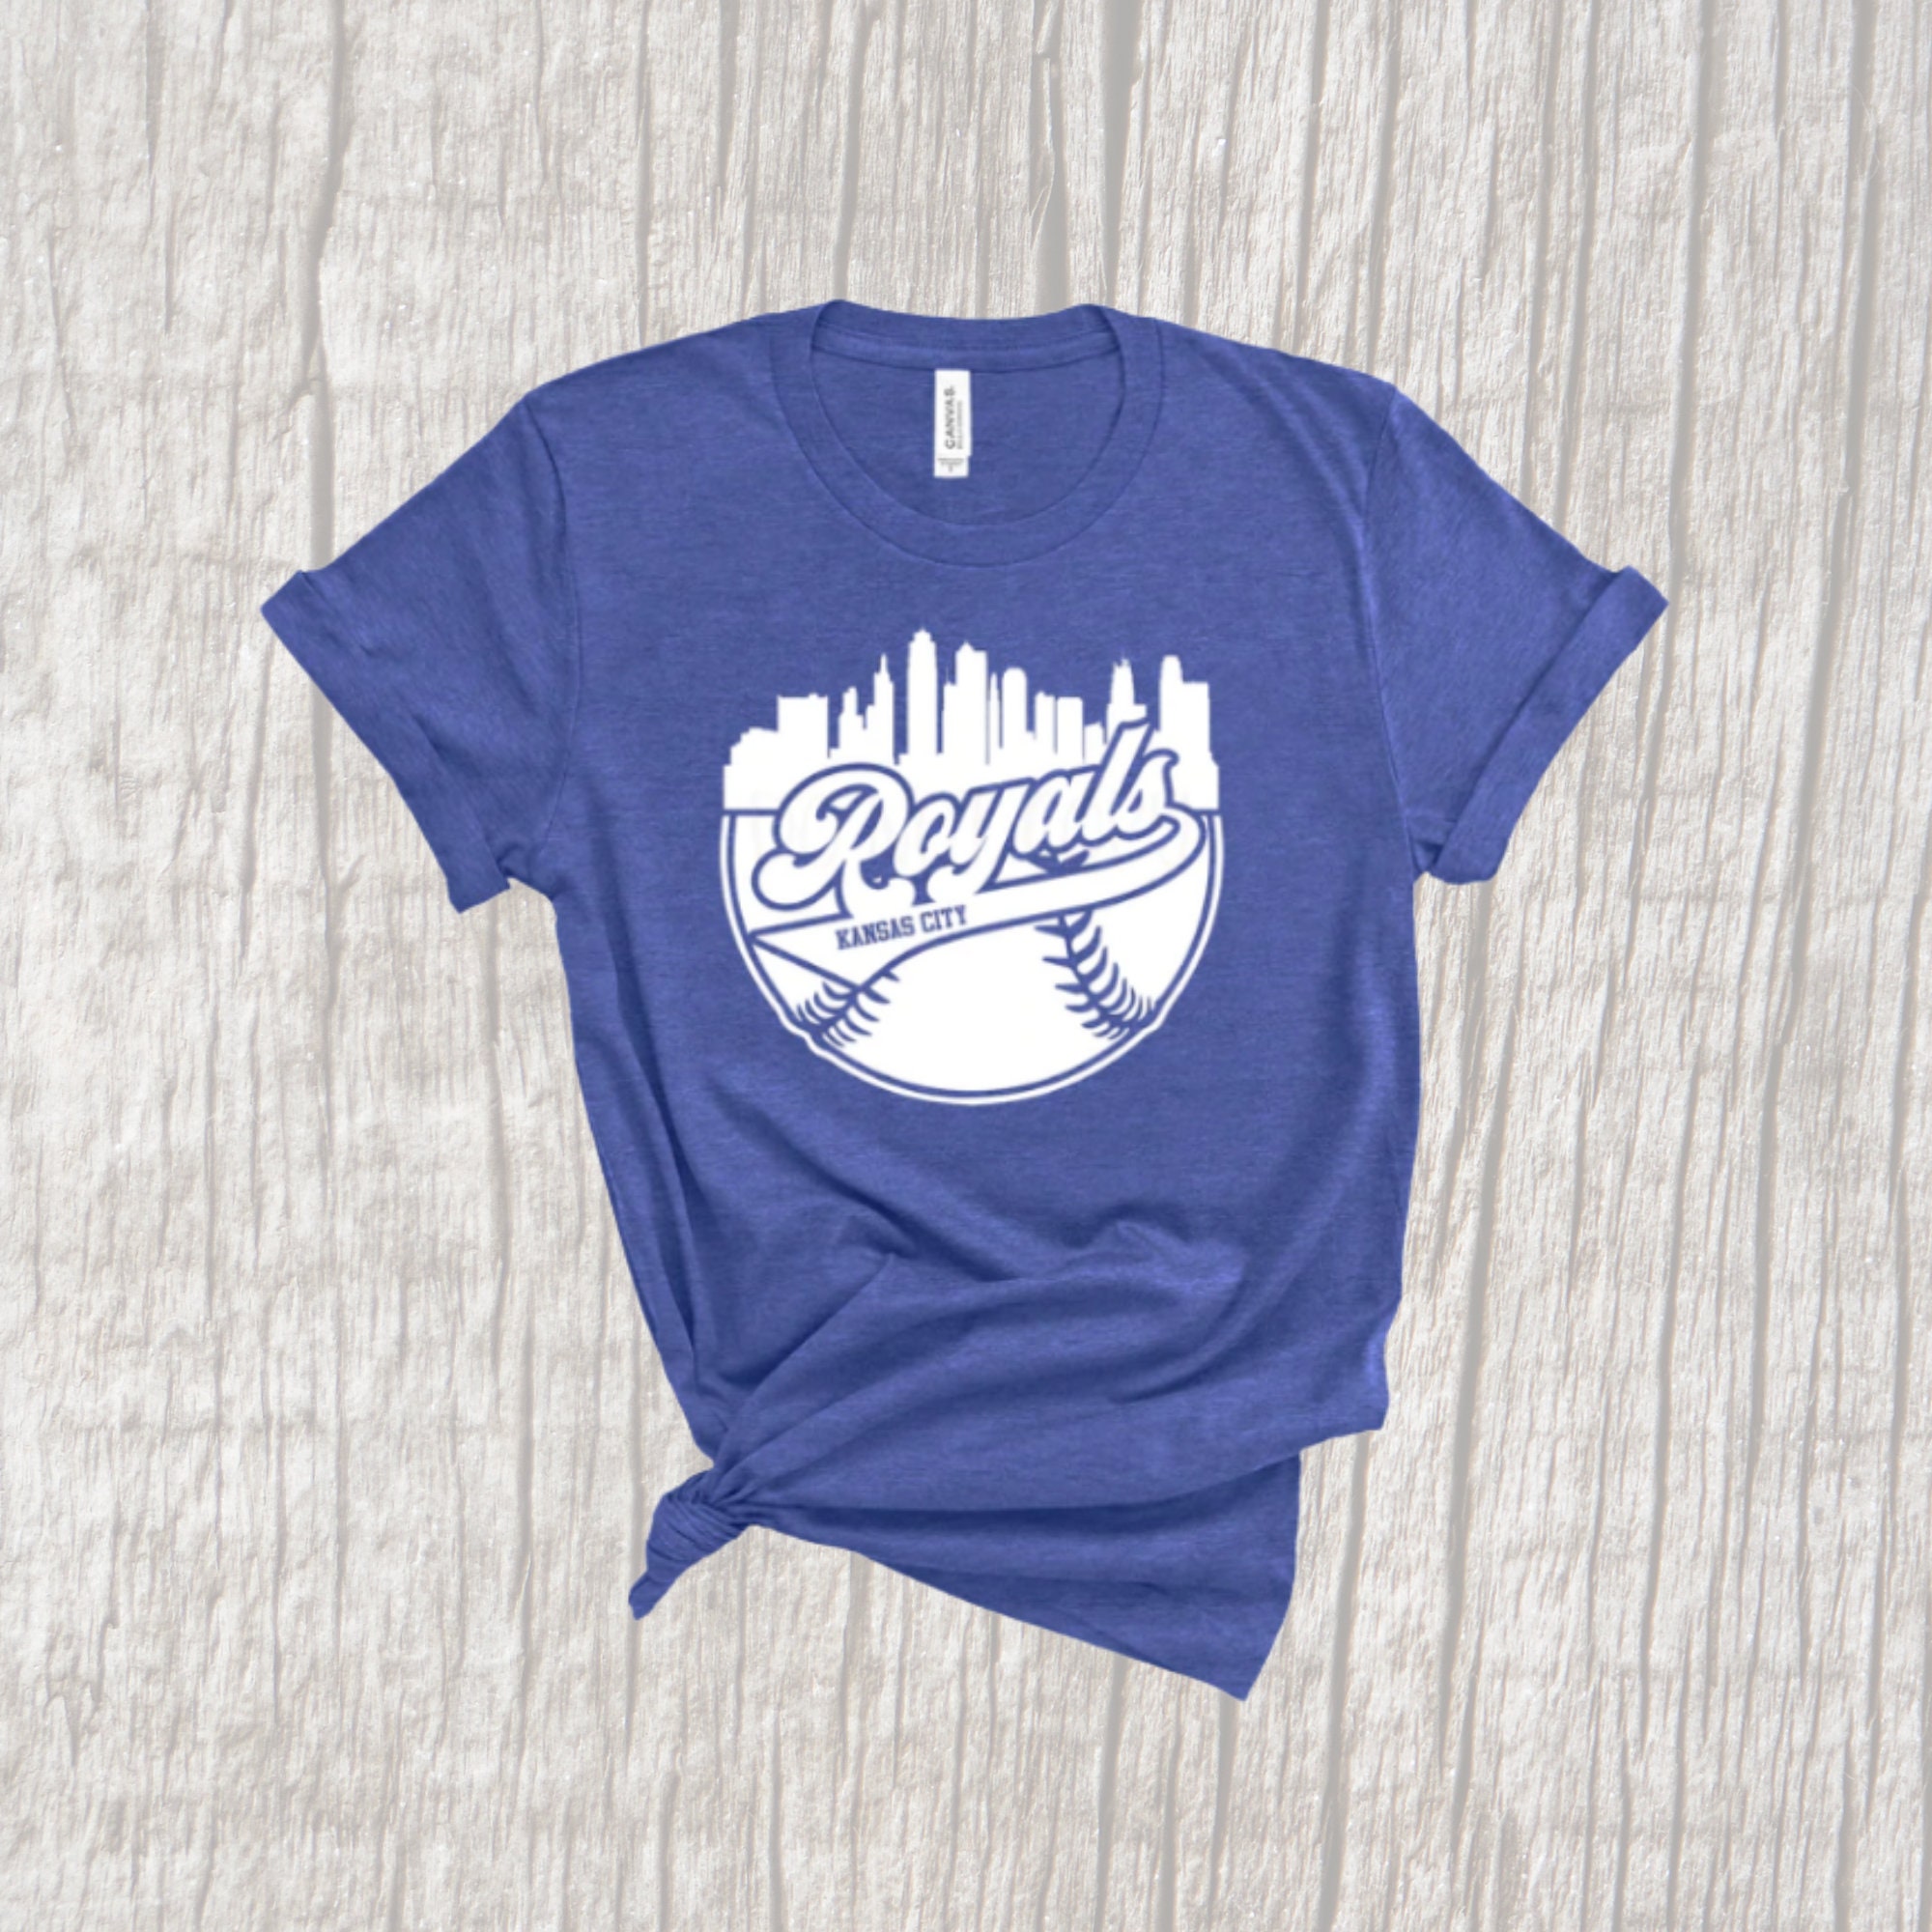 Royals T-Shirt VL01  Baseball shirt designs, Royals shirts